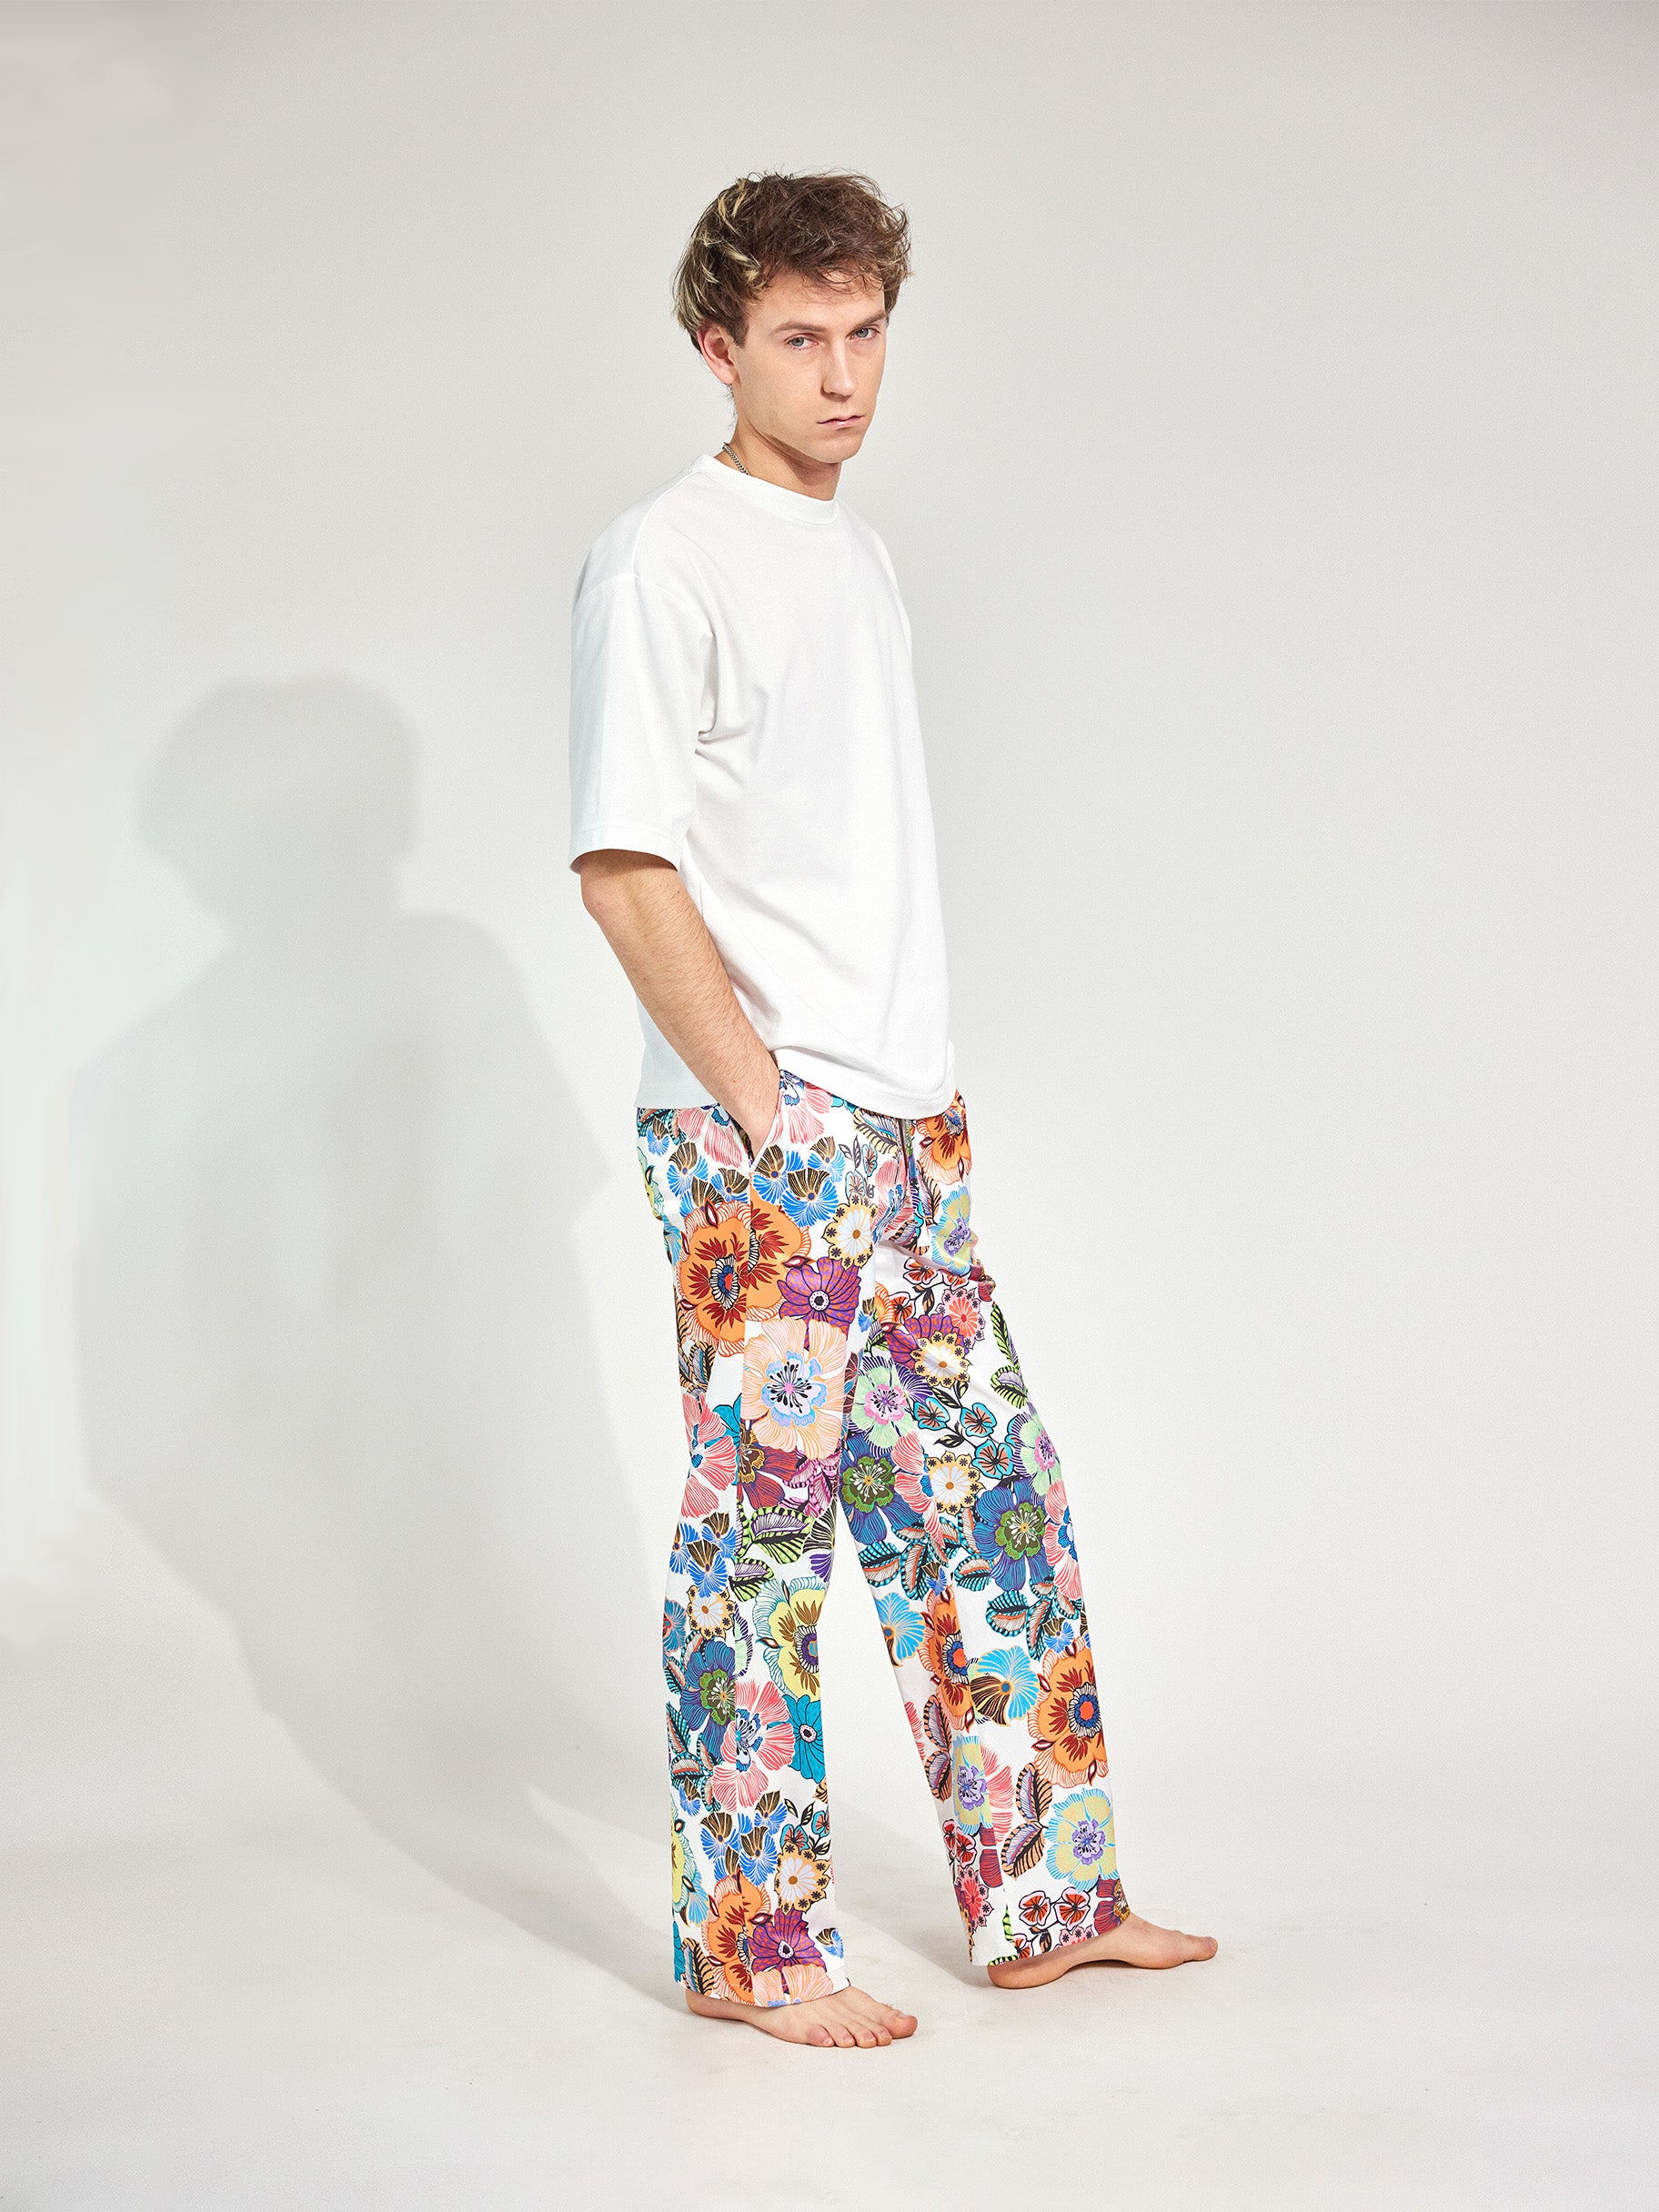 Mann trägt Hose im Pyjama-Style aus fließendem, glänzenden französischen Satinstoff und tiefen Hosentaschen